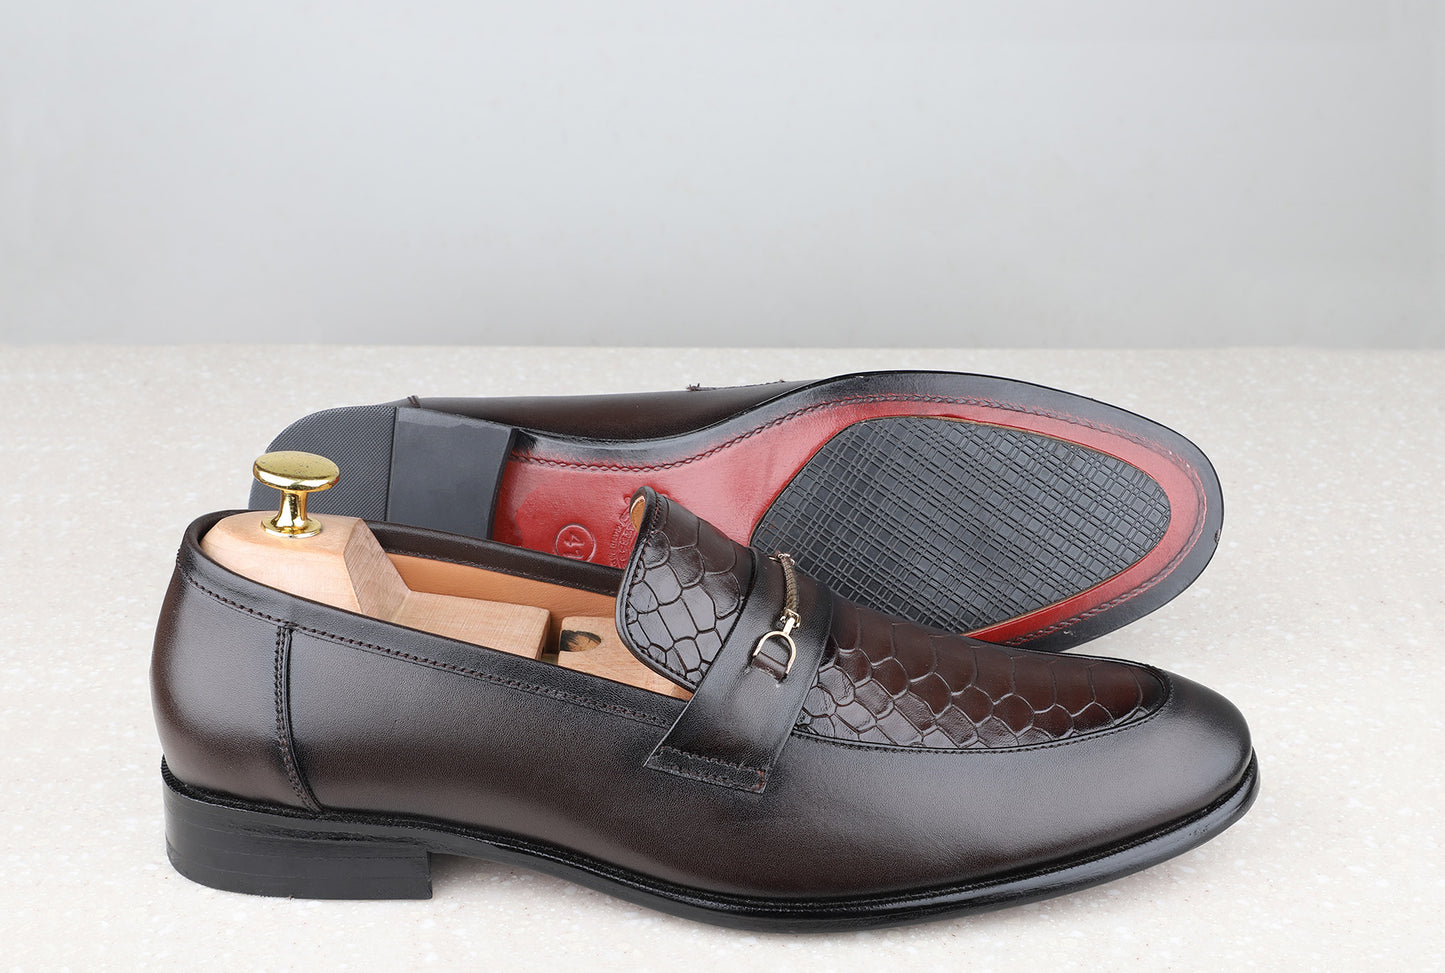 Atesber Brown Textured Formal Loafer For Men